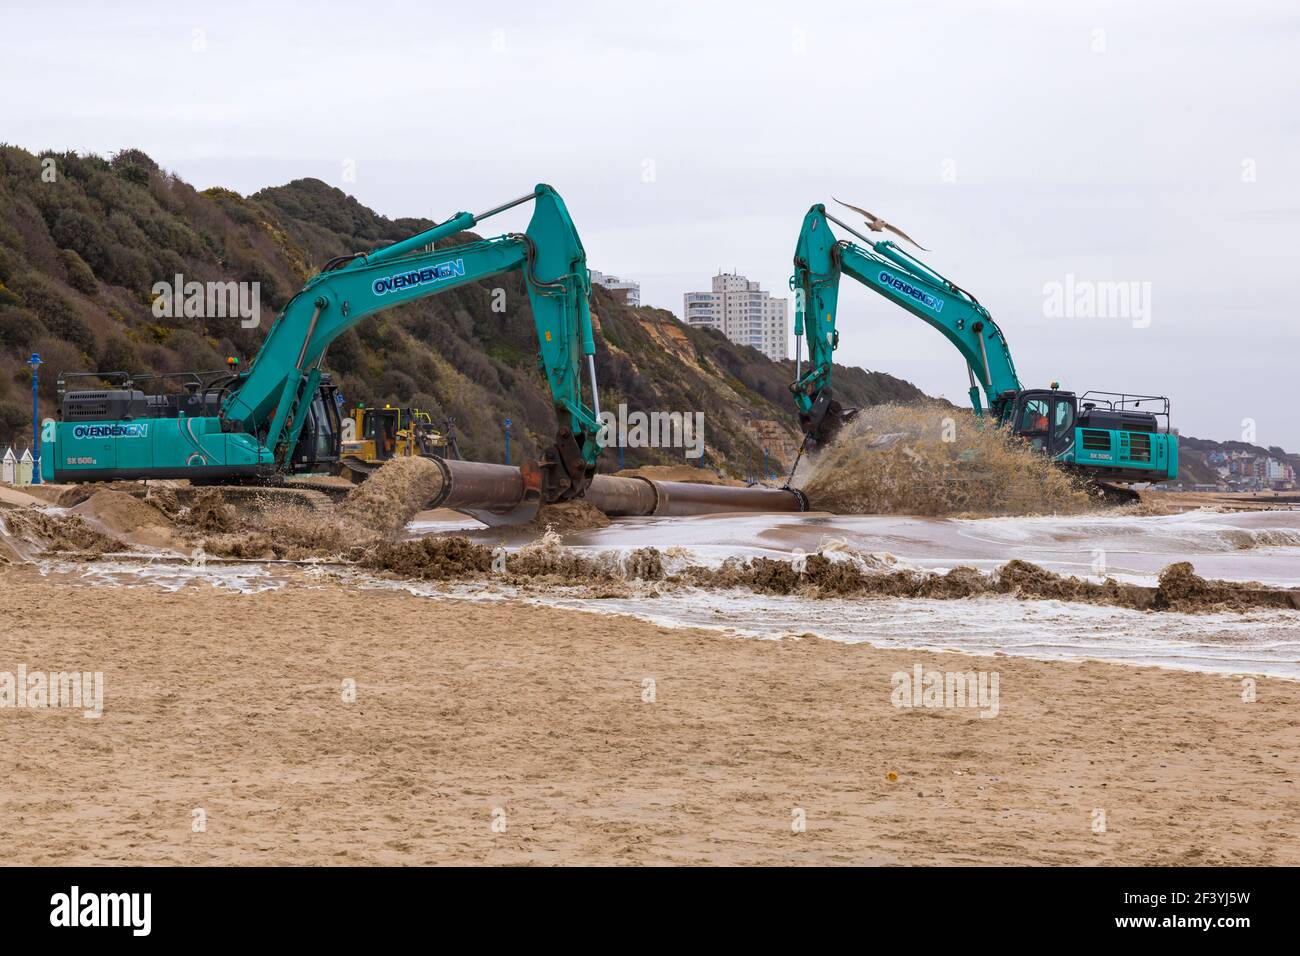 Bournemouth, Dorset, Großbritannien. 18th. März 2021. Am Strand von Bournemouth wird der Sand von einem Bagger durch Rohre aus dem Meer auf die Strandküste gepumpt. Mit mehr Menschen wahrscheinlich zu bleiben in diesem Jahr und Urlaub in Bournemouth die goldenen Sandstrände sind Teil der Attraktion. Ovenden SK500 Bagger - Wasser und Sand werden ausgepumpt und sprudeln. Quelle: Carolyn Jenkins/Alamy Live News Stockfoto